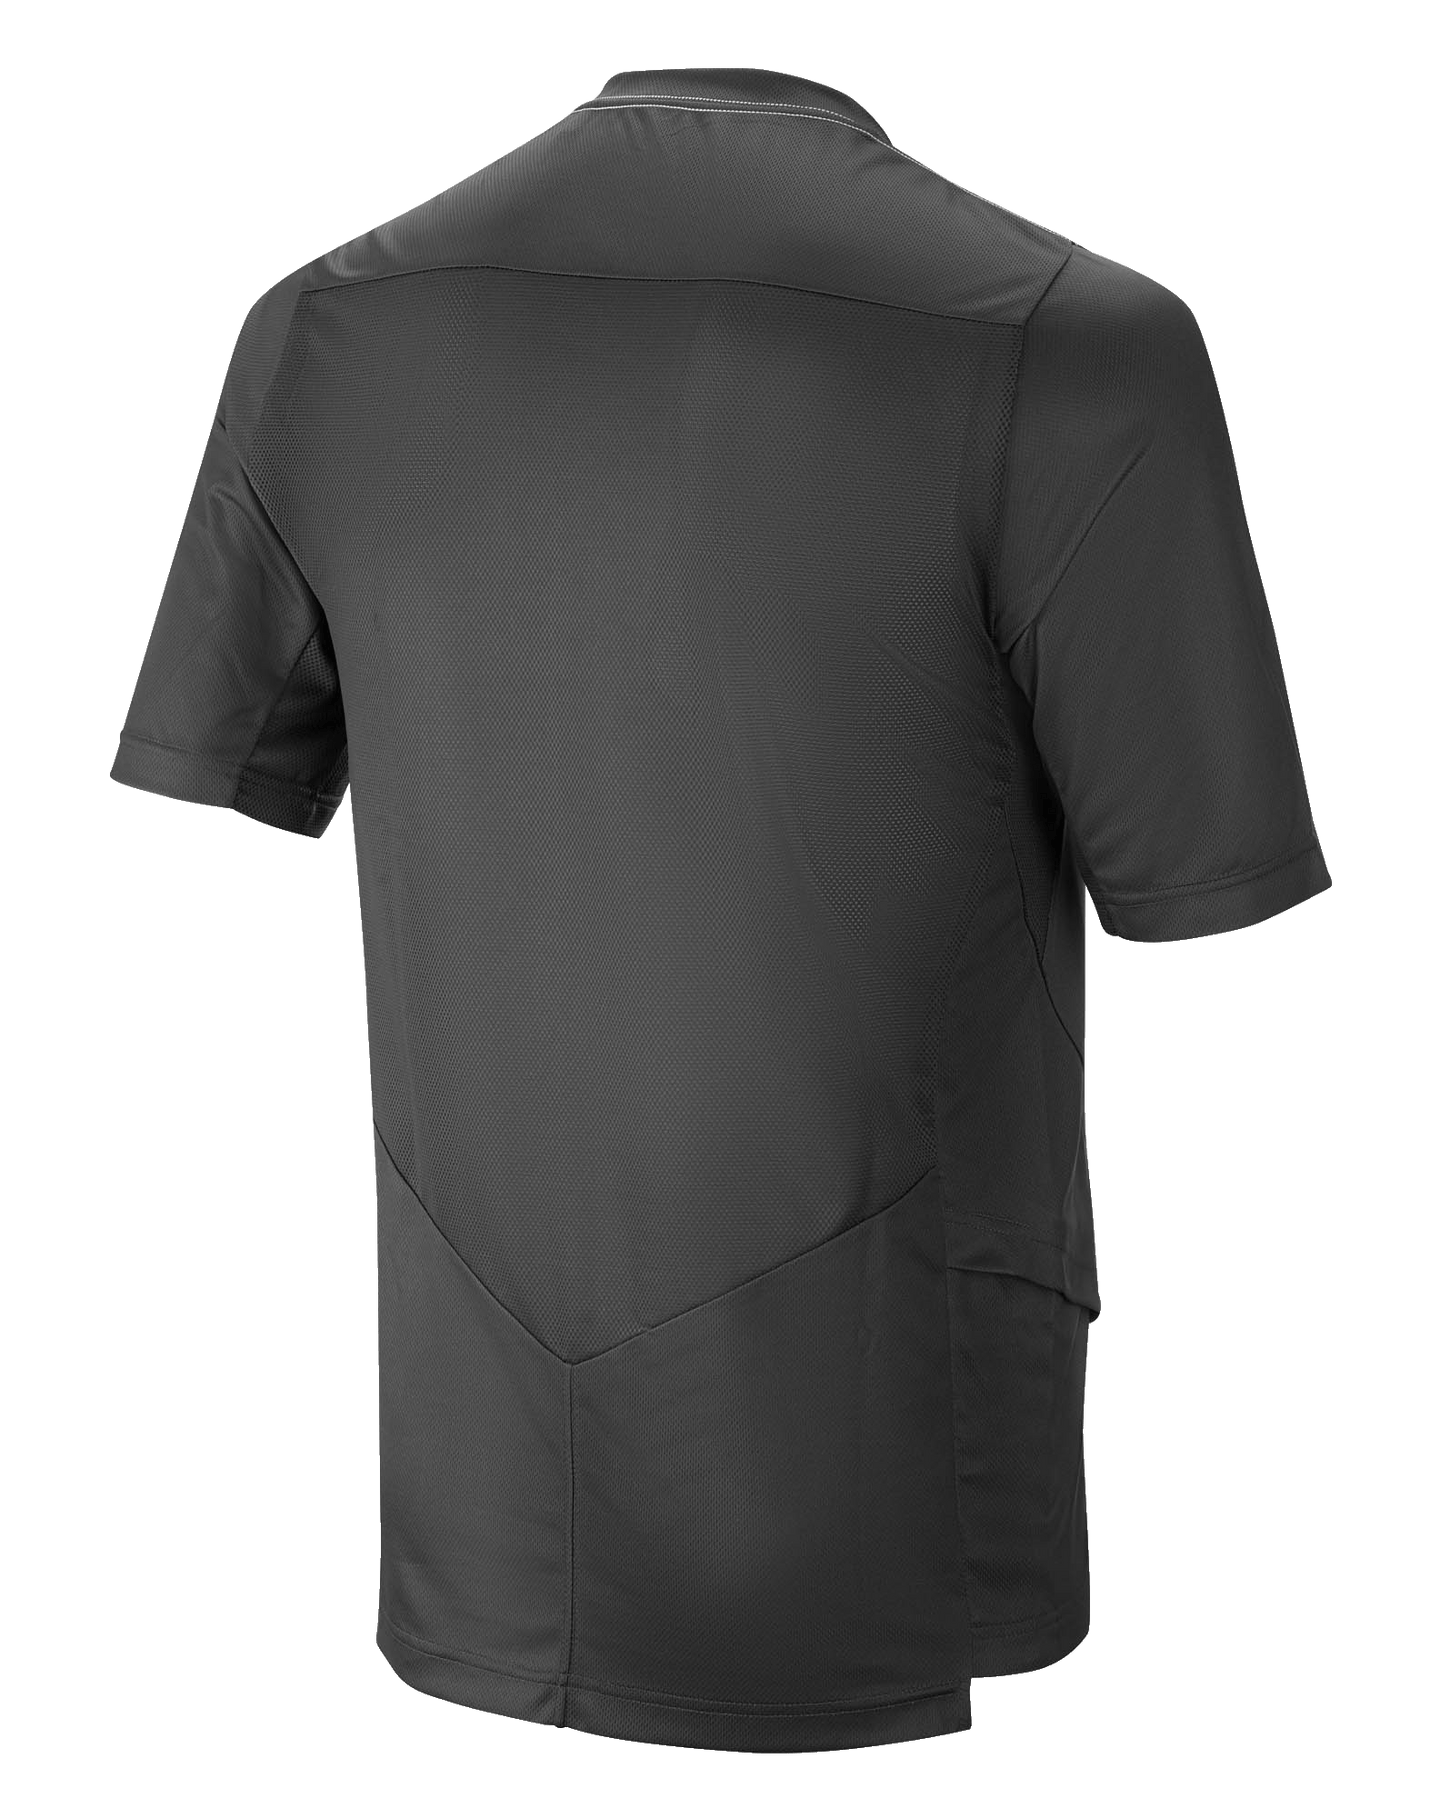 Drop 6.0 Jersey - Short Sleeve